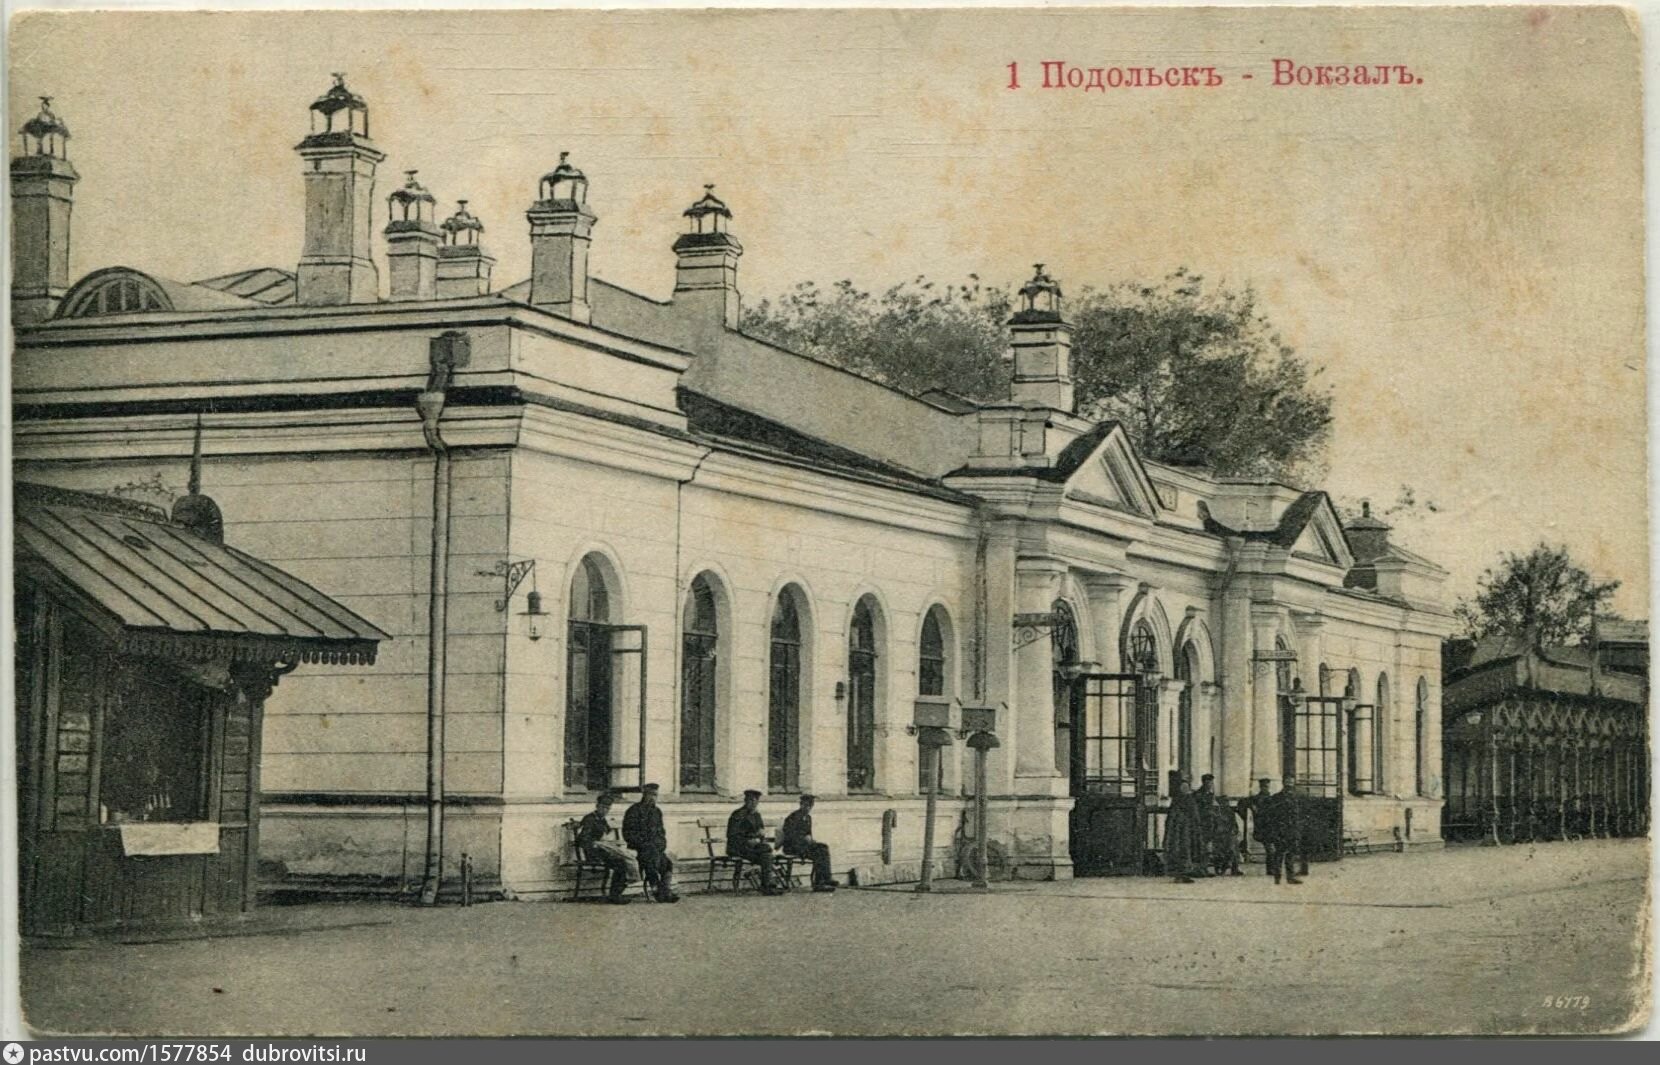 Здание вокзала Подольск